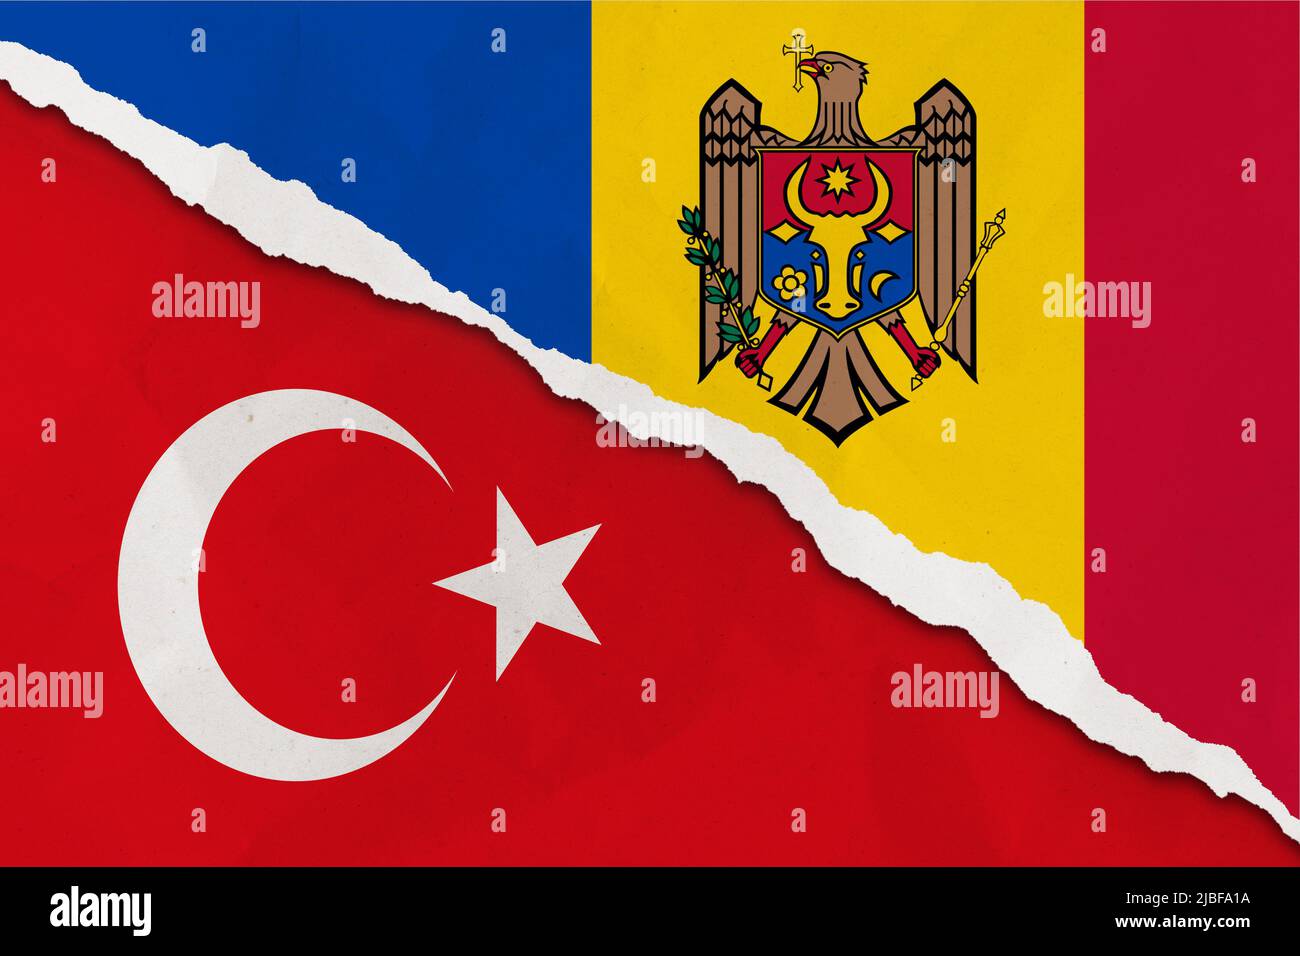 Drapeau de la Moldavie et de la Turquie papier déchiré grunge fond. Résumé l'économie de la Moldavie et de la Turquie, les conflits politiques, la texture du concept de guerre contexte Banque D'Images